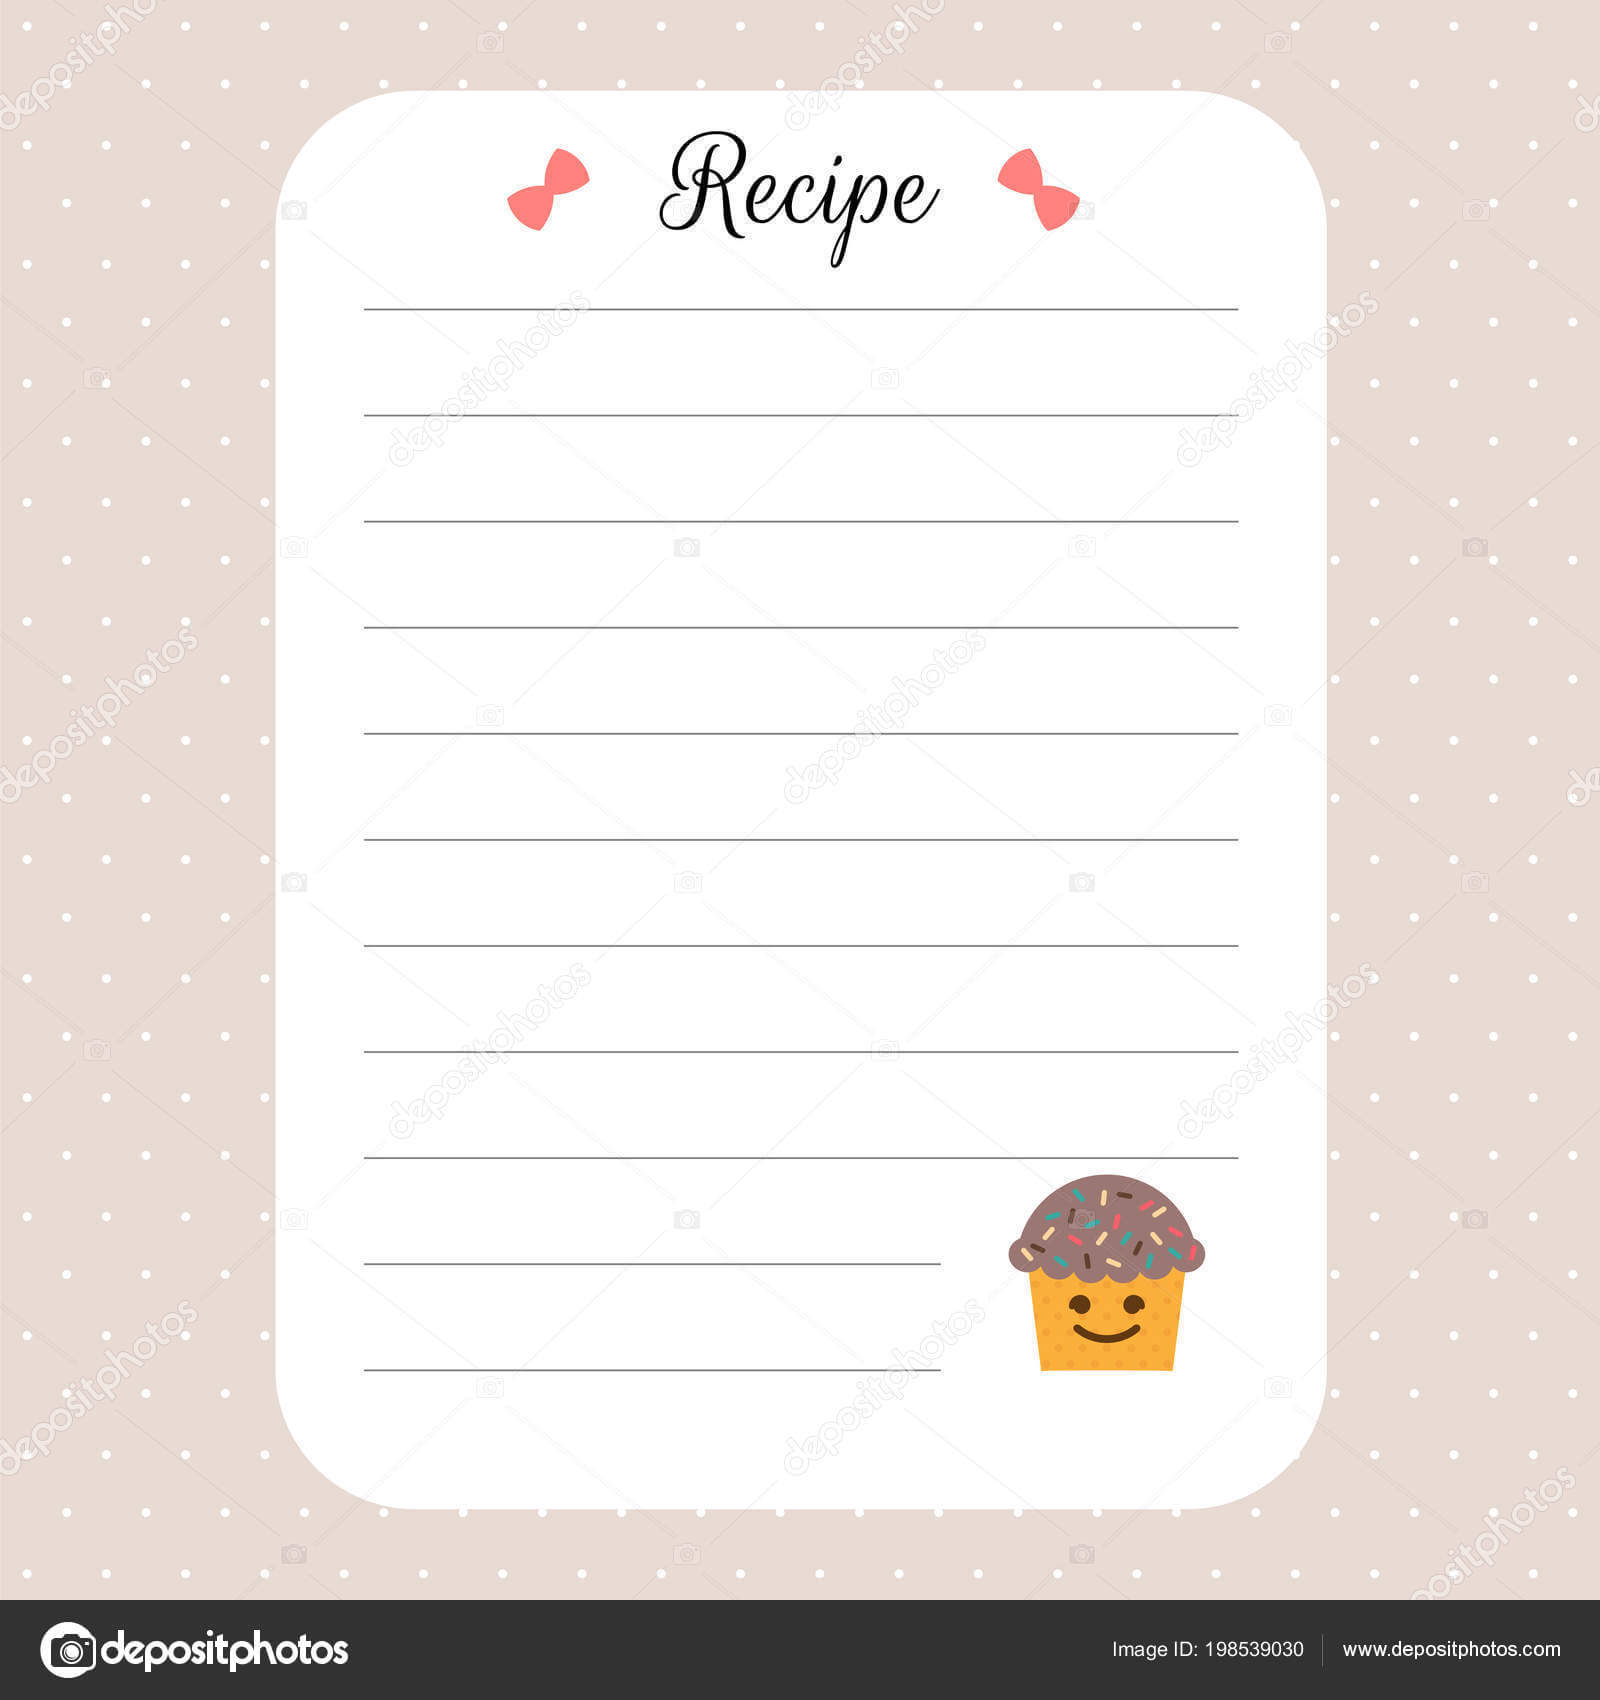 Restaurant Recipe Book Template | Recipe Card Template With Regard To Restaurant Recipe Card Template